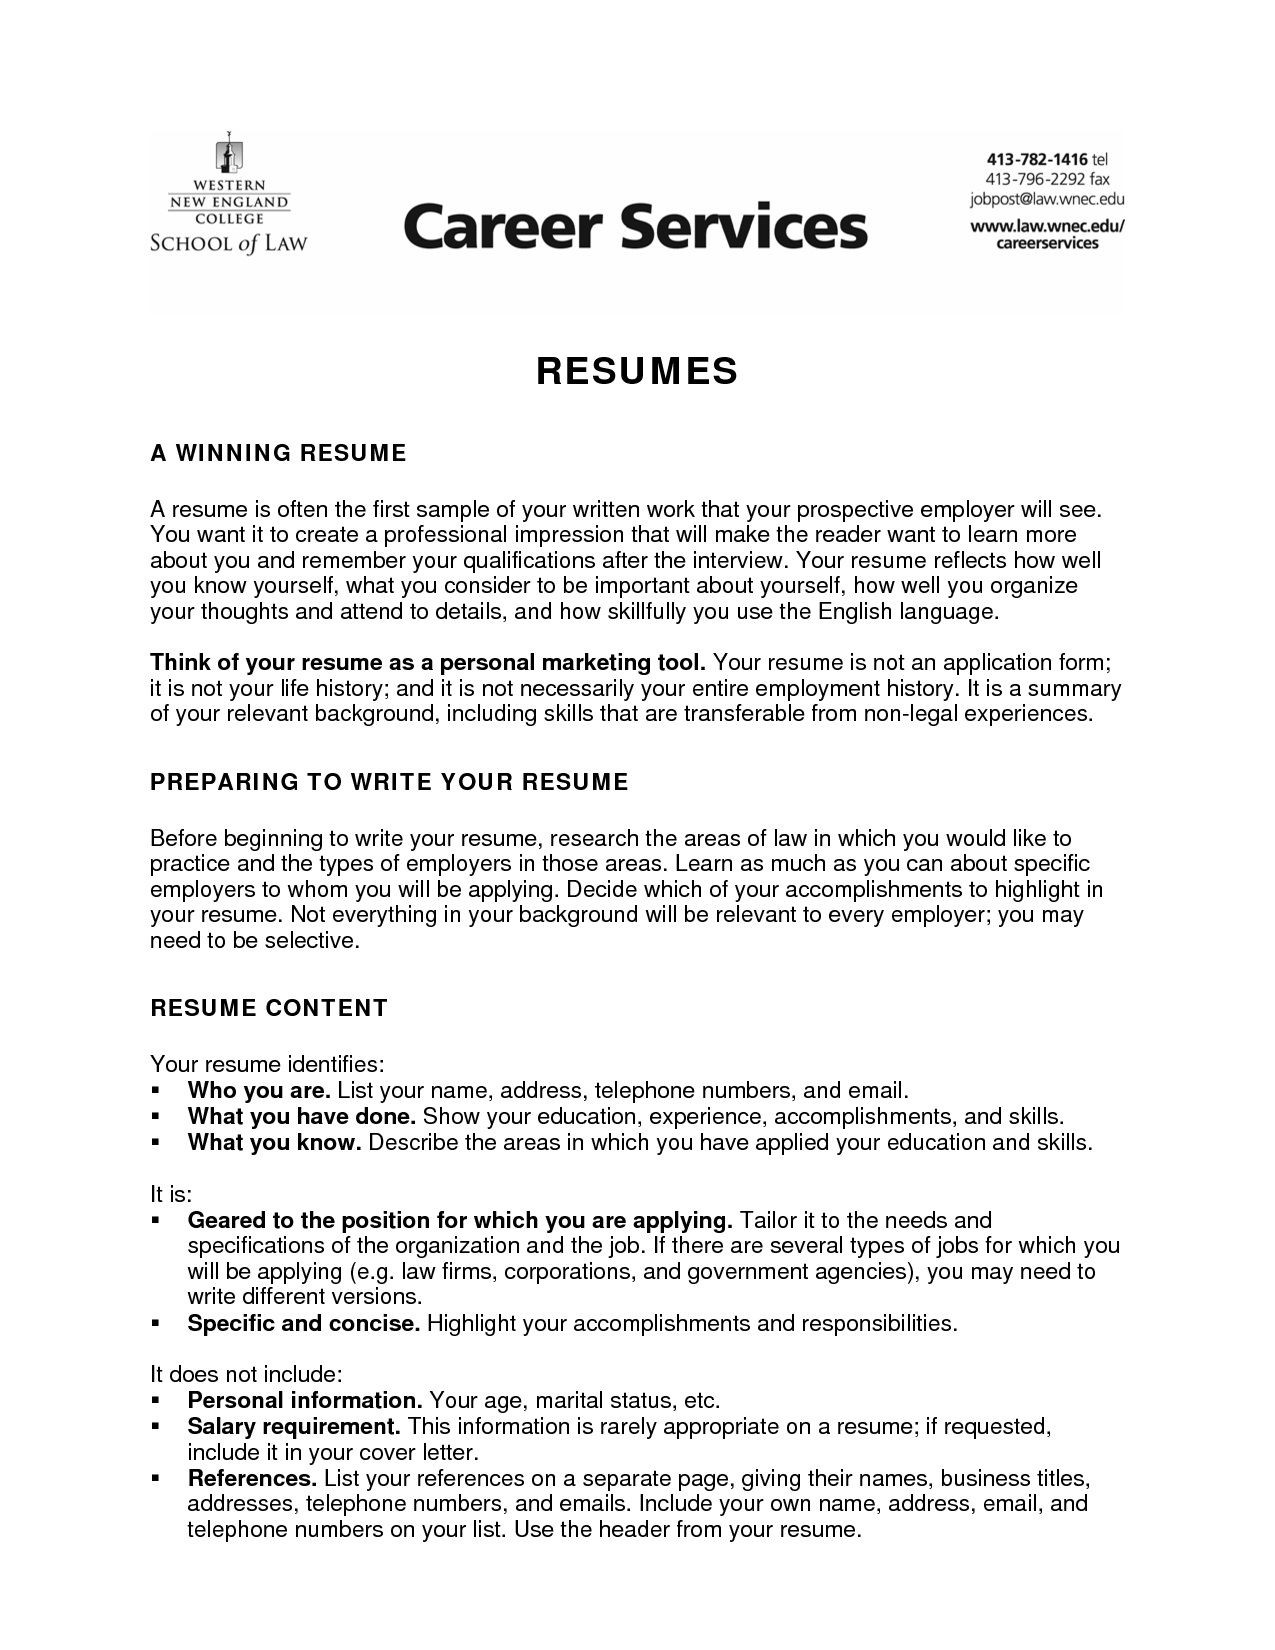 Resume Objective Sample for Summer Job God Objective for Resume Colege Student